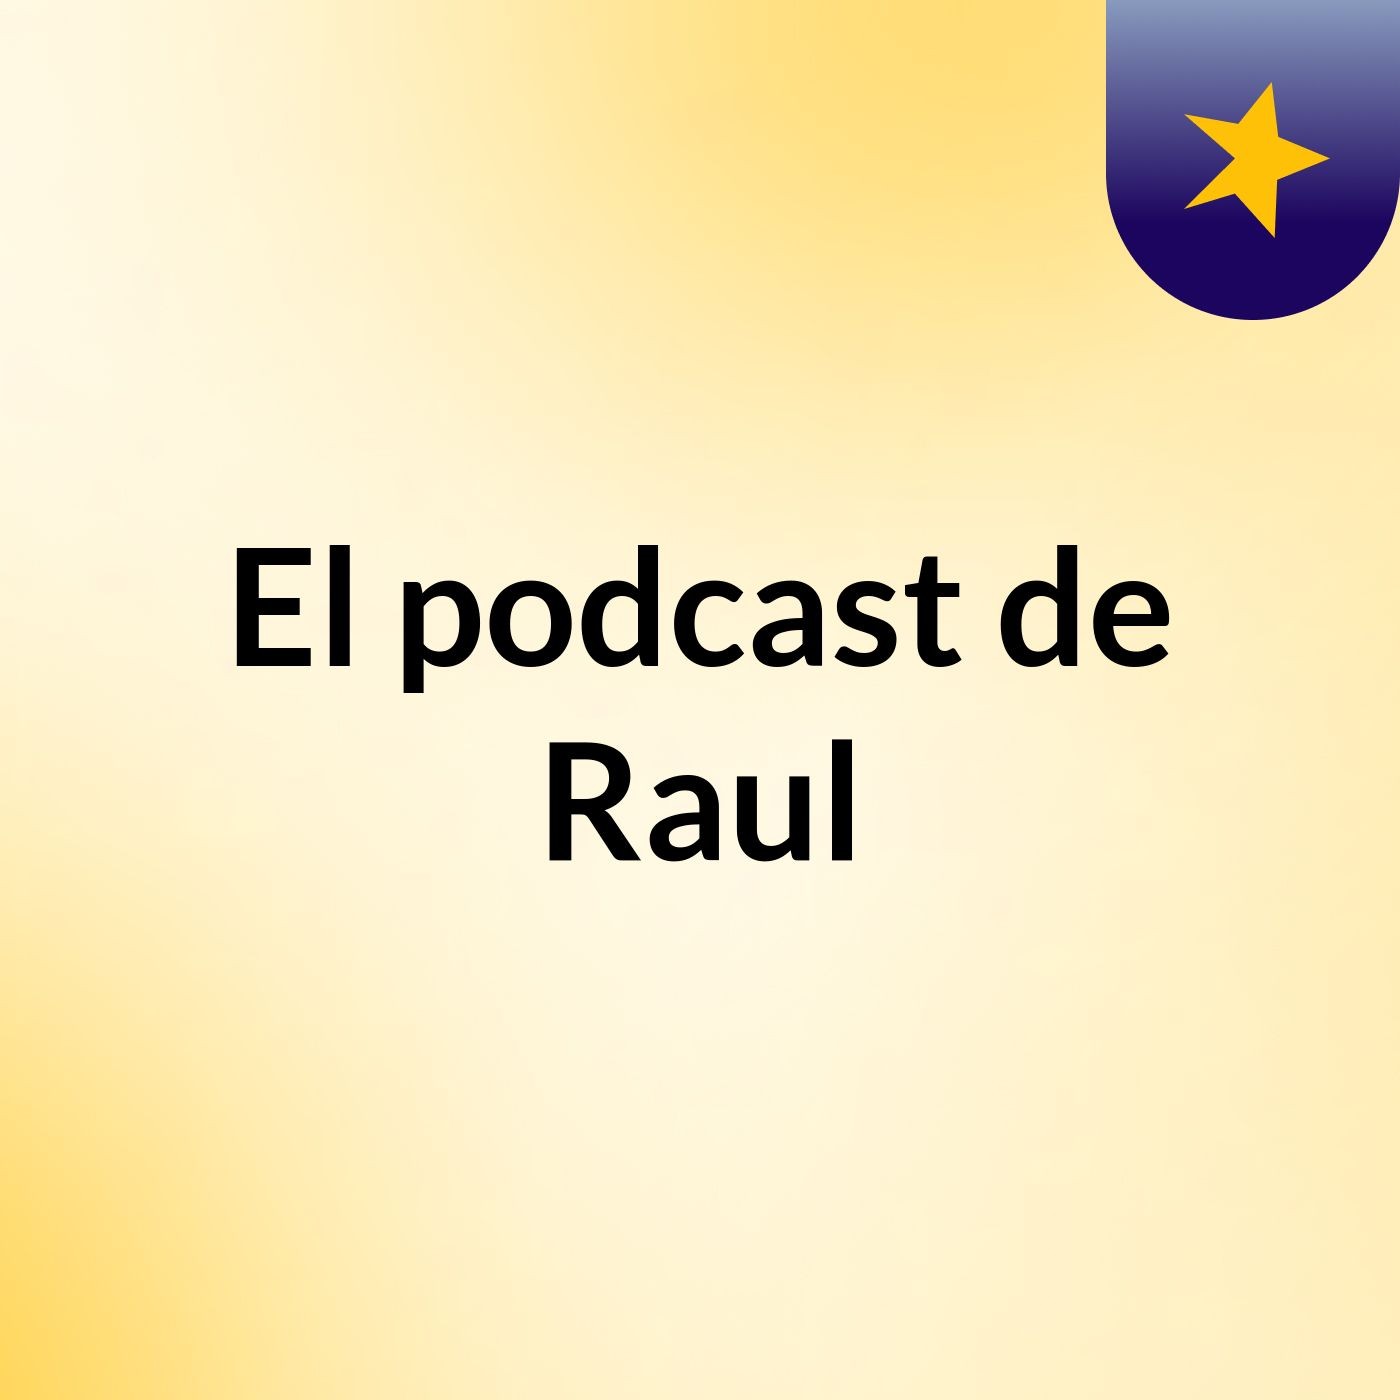 El podcast de Raul